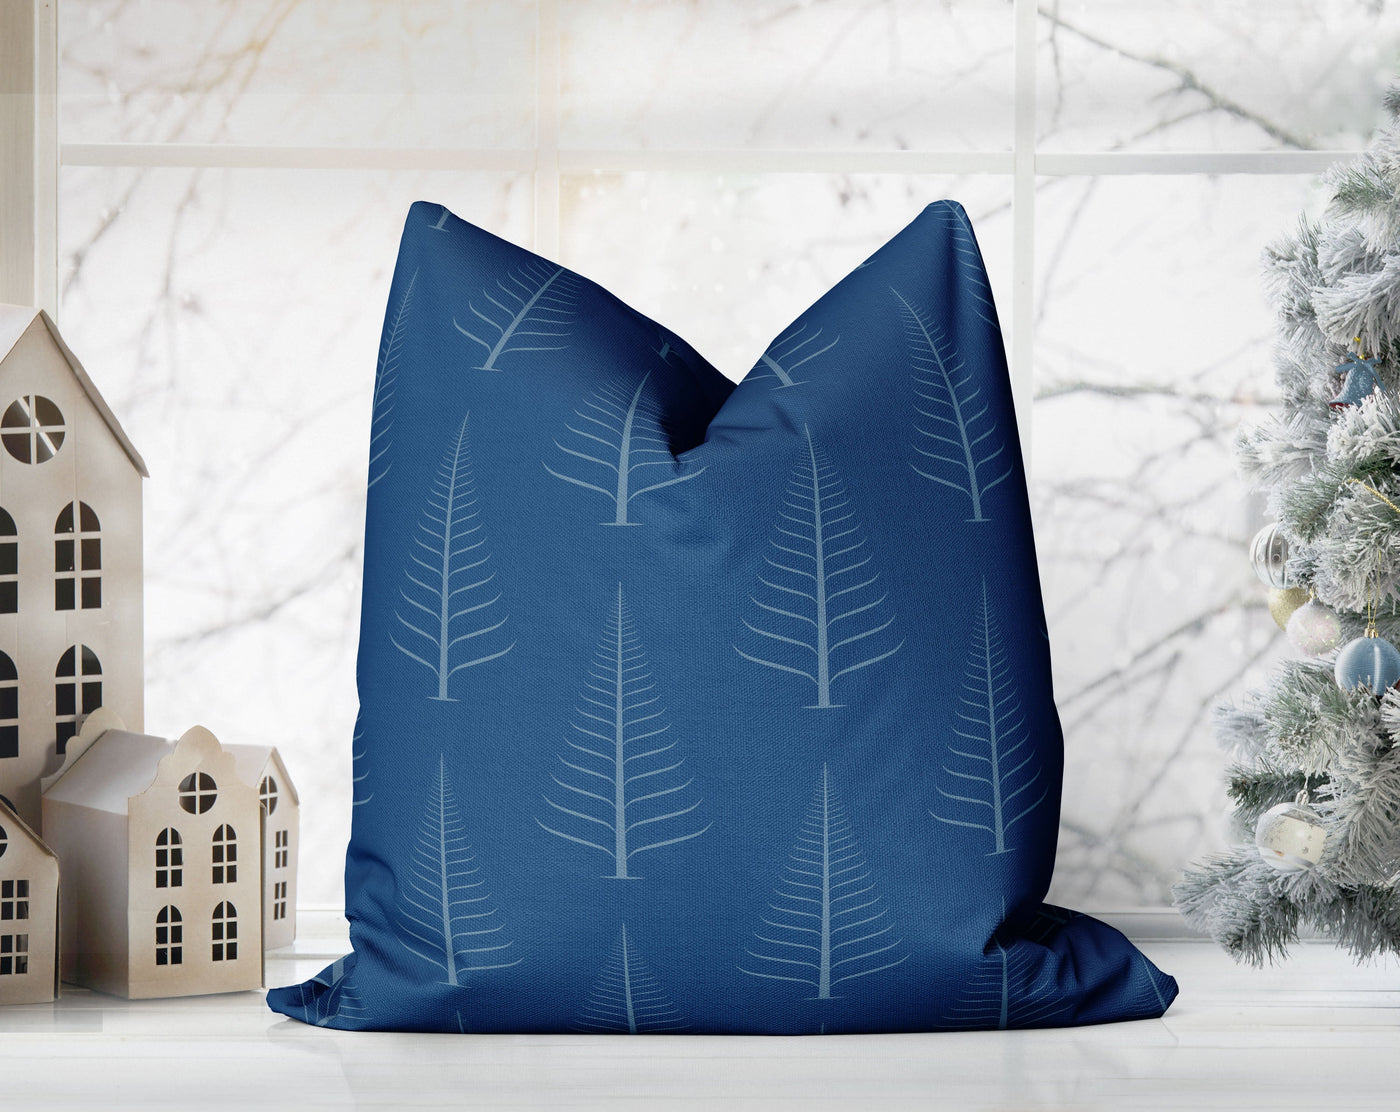 Gentle Winter Christmas Trees Oxford Blue Pillow Throw - Cush Potato Pillows